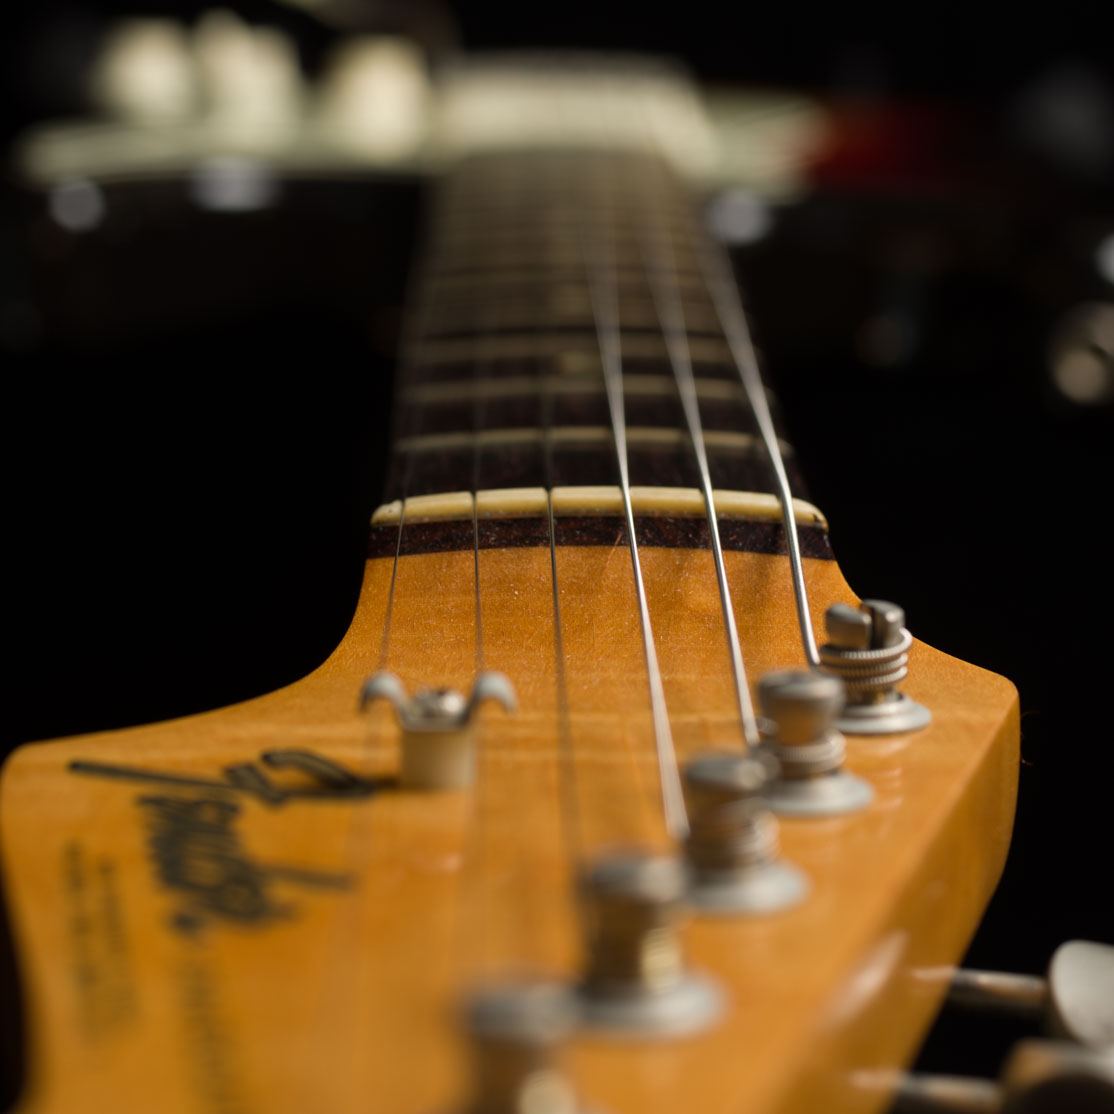 FENDER Stratocaster 1965年 (Vintage)